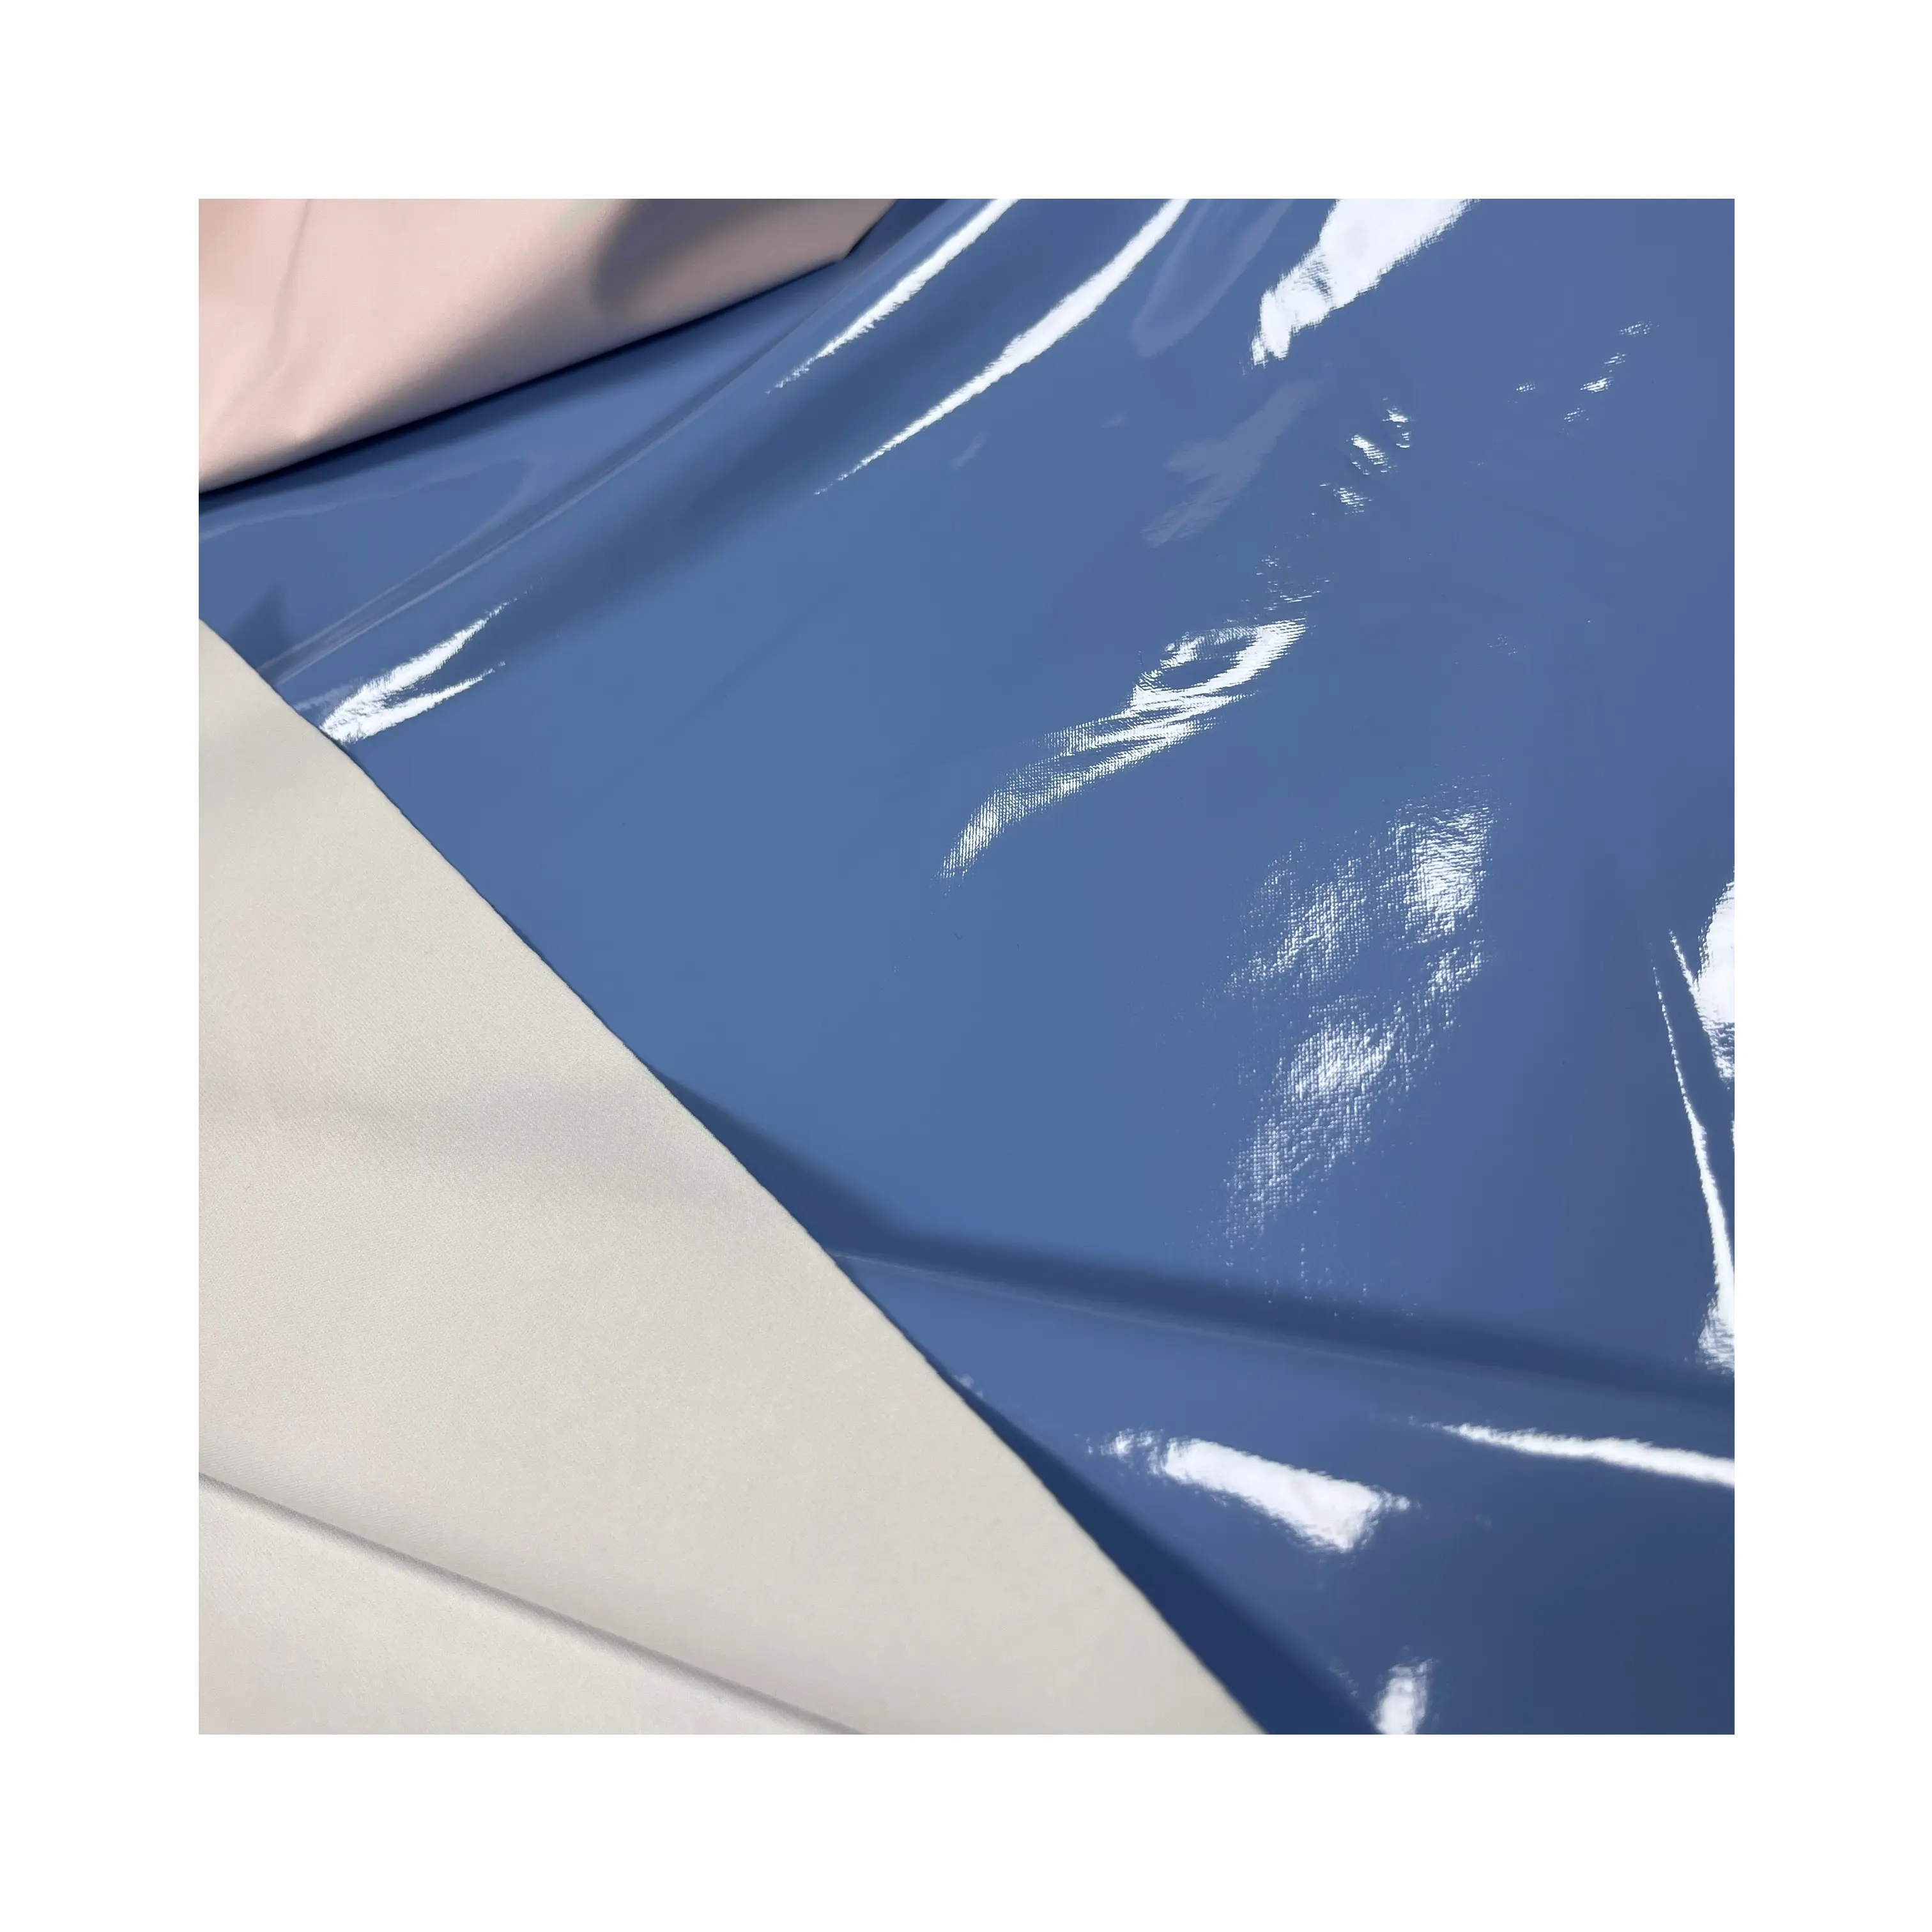 Kain kulit sintetis Premium ramah lingkungan tahan air dan serbaguna untuk kostum dan tekstil